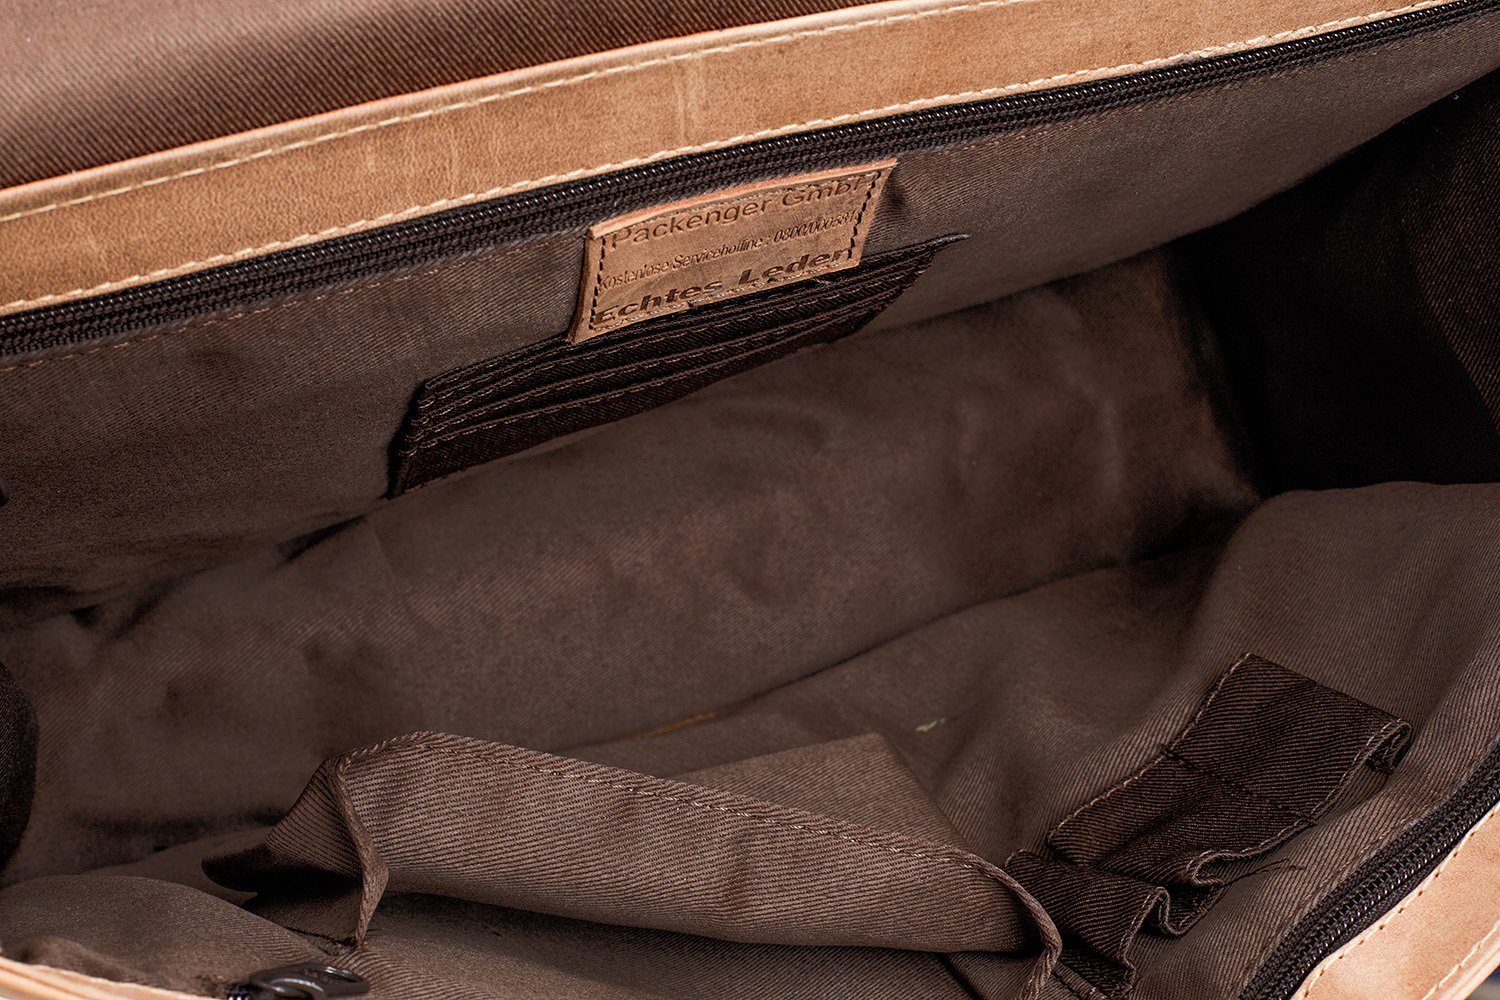 Innentaschen, Echtes Packenger viele Bag Schulterriemen, Messenger verstellbarer Ledertasche, Rindsleder, hochwertige Beschläge